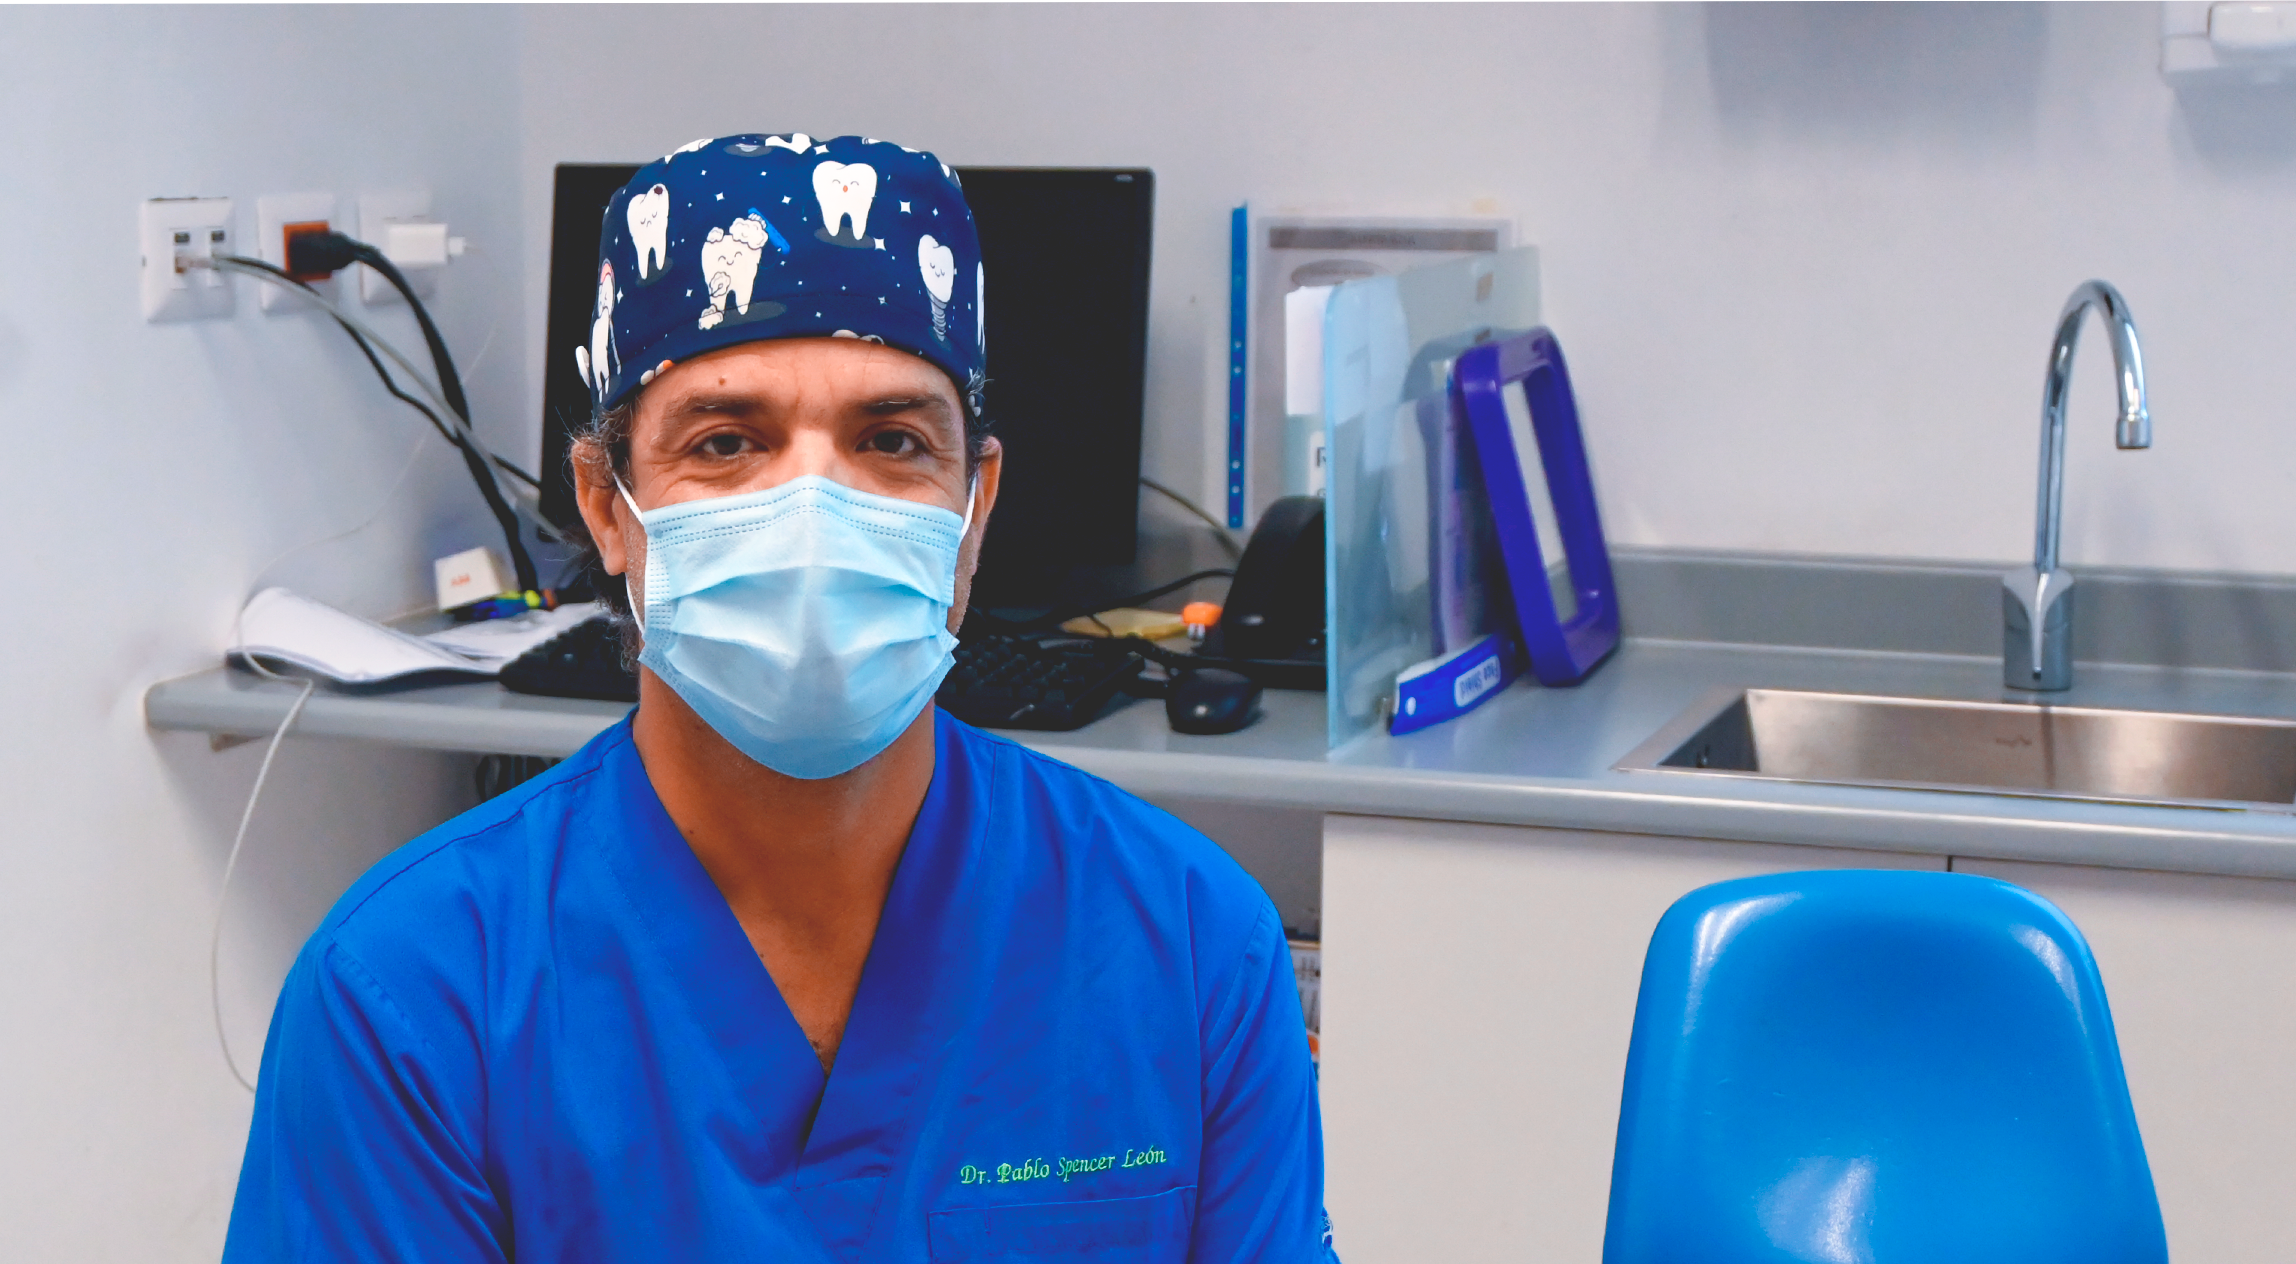 Conmemoramos el Día del Odontólogo en Chile: Entrevistamos a Dr. Pablo Spencer, Odontopediatra del Hospital Regional de Antofagasta